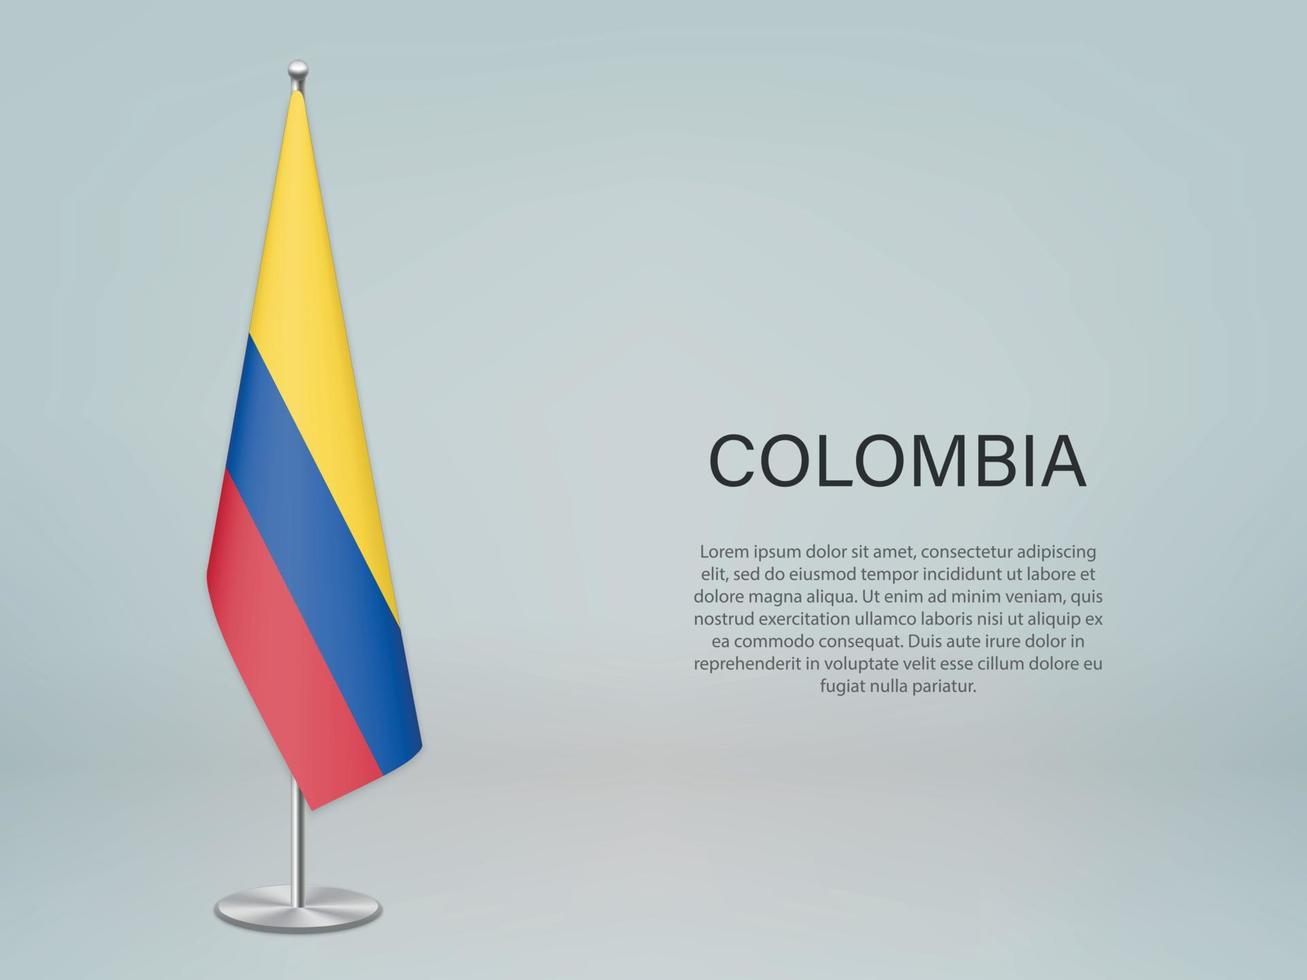 colombia colgando la bandera en el stand. plantilla para banner de conferencia vector